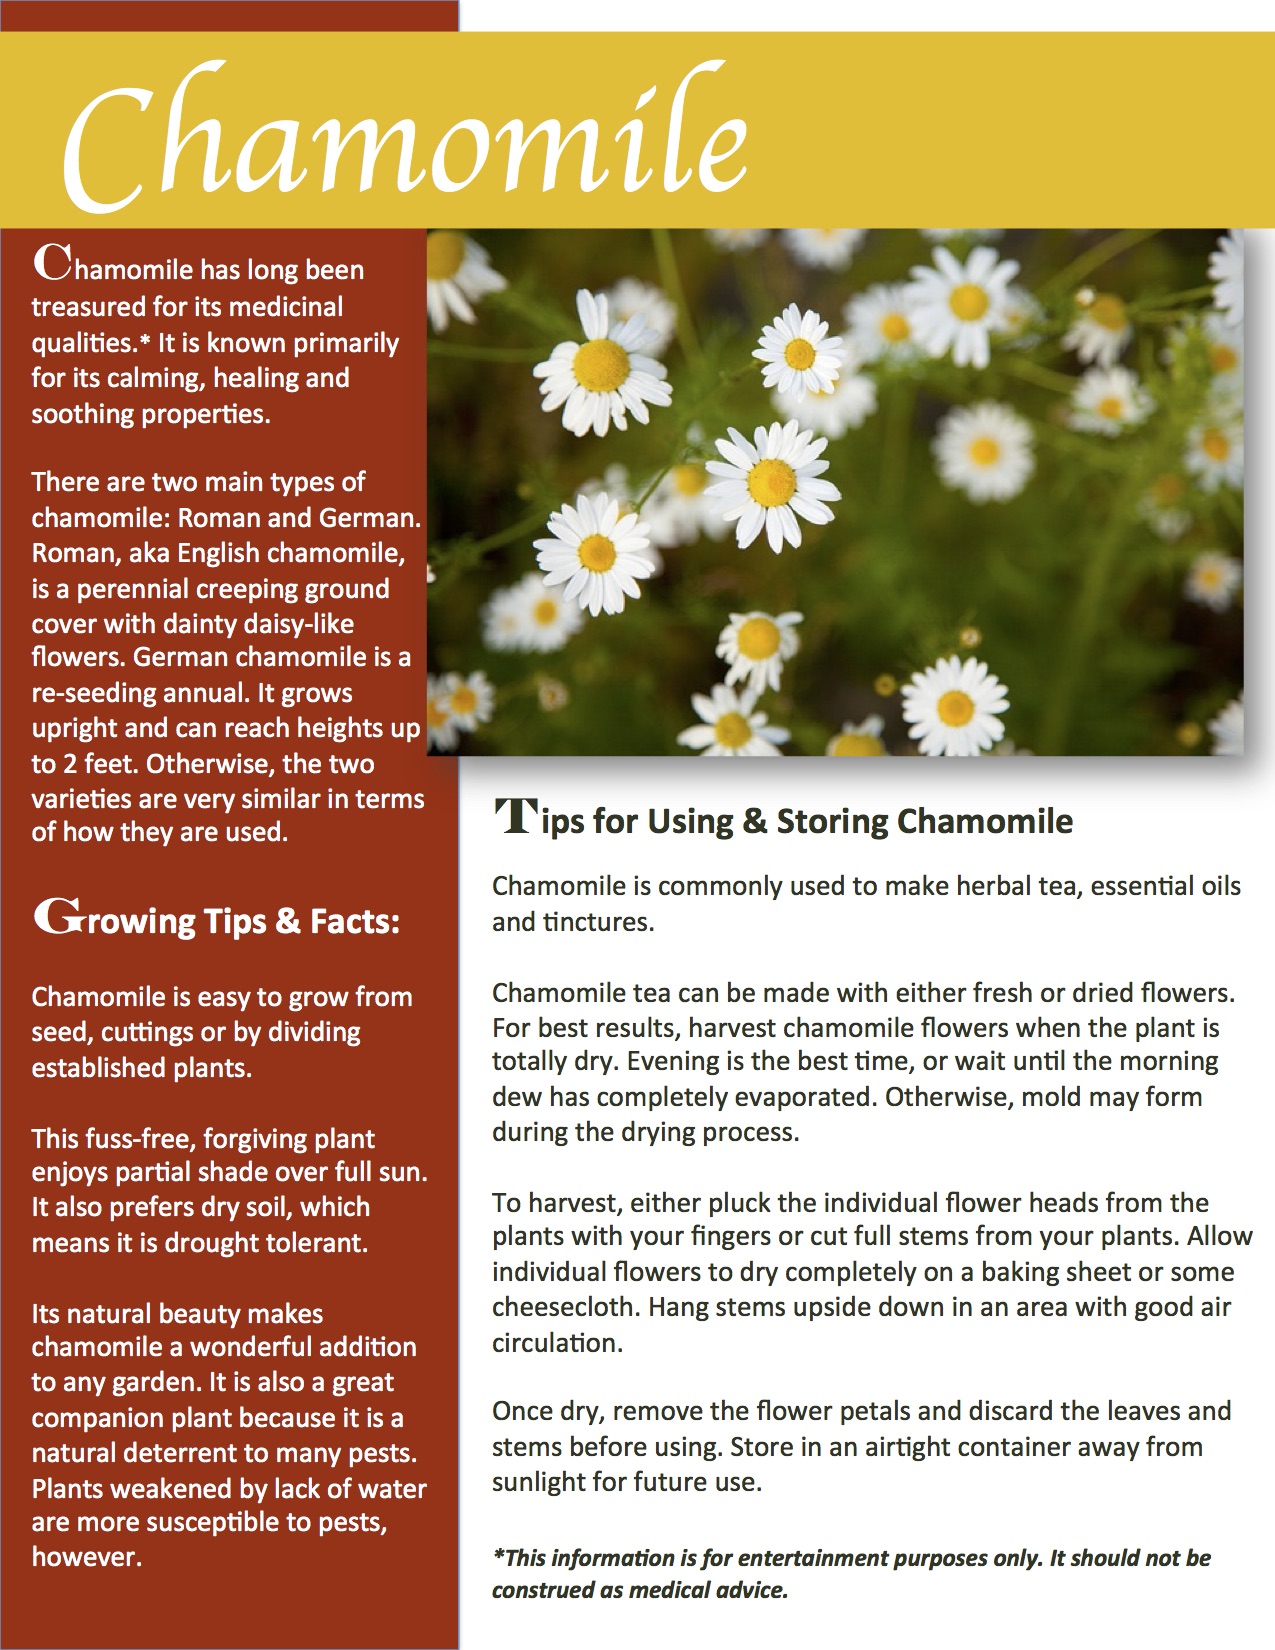 Herb Gardening 101: Growing Chamomile